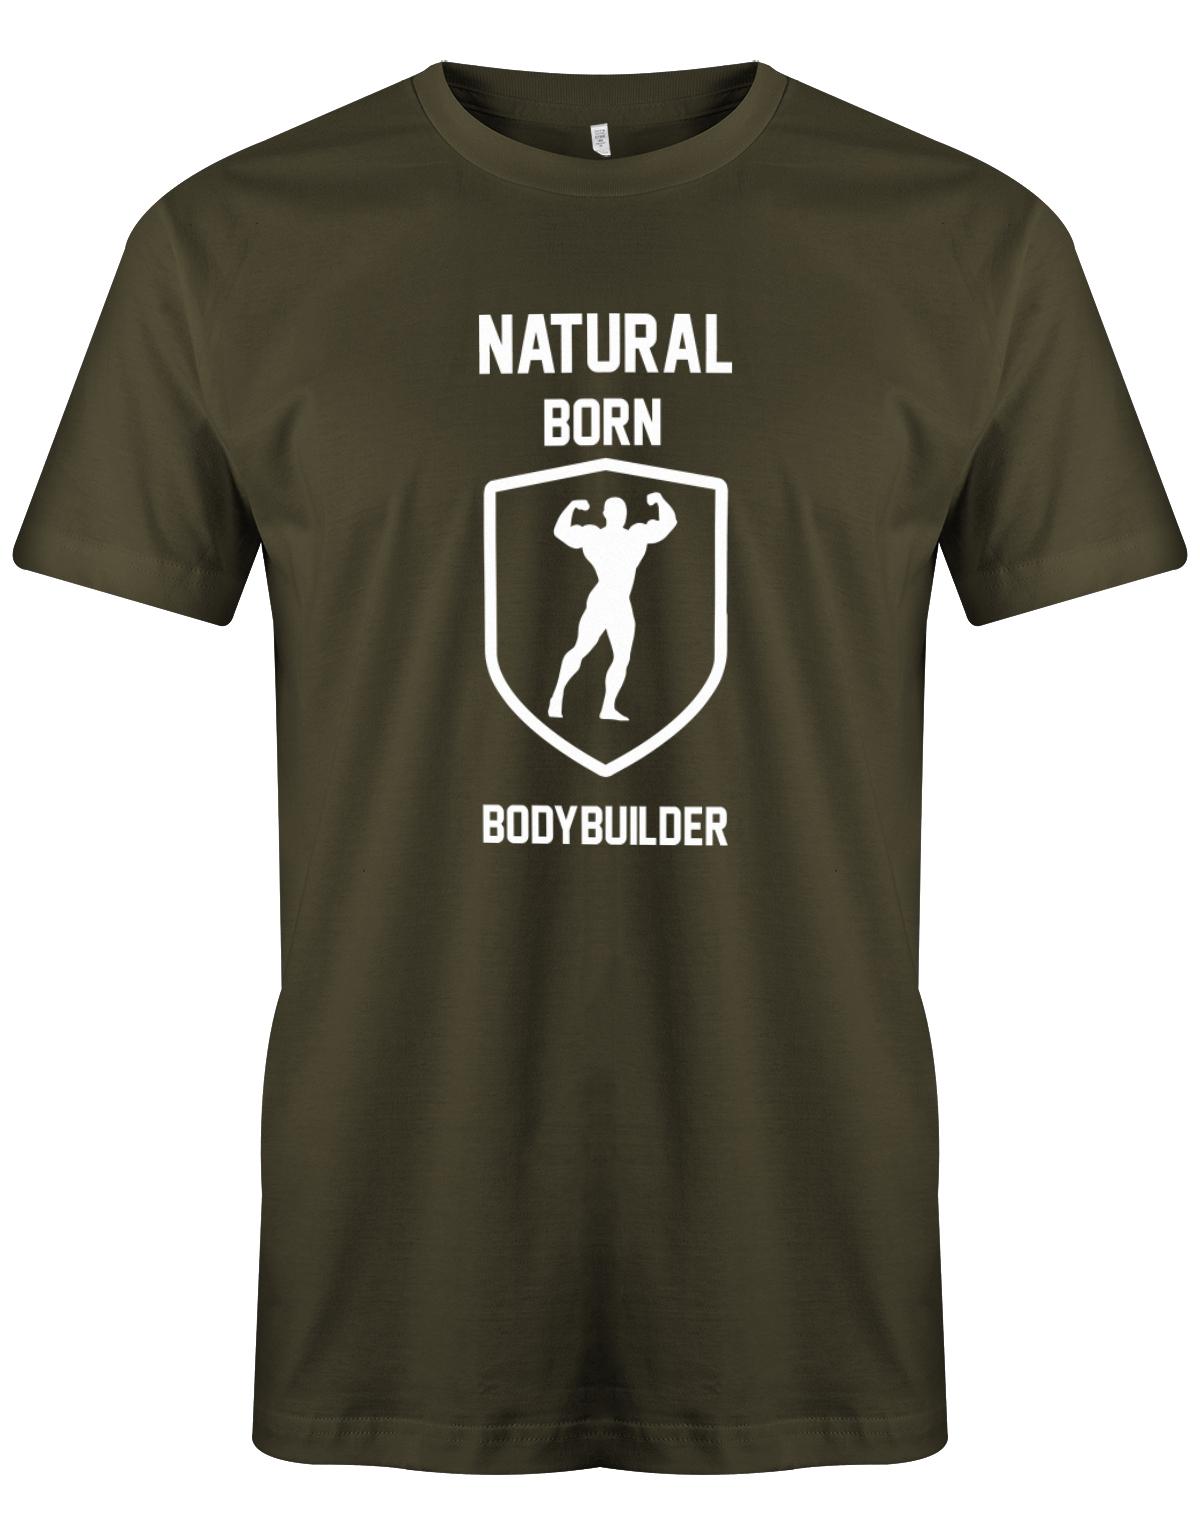 Natural-born-Bodybuilder-herren-Shirt-Army